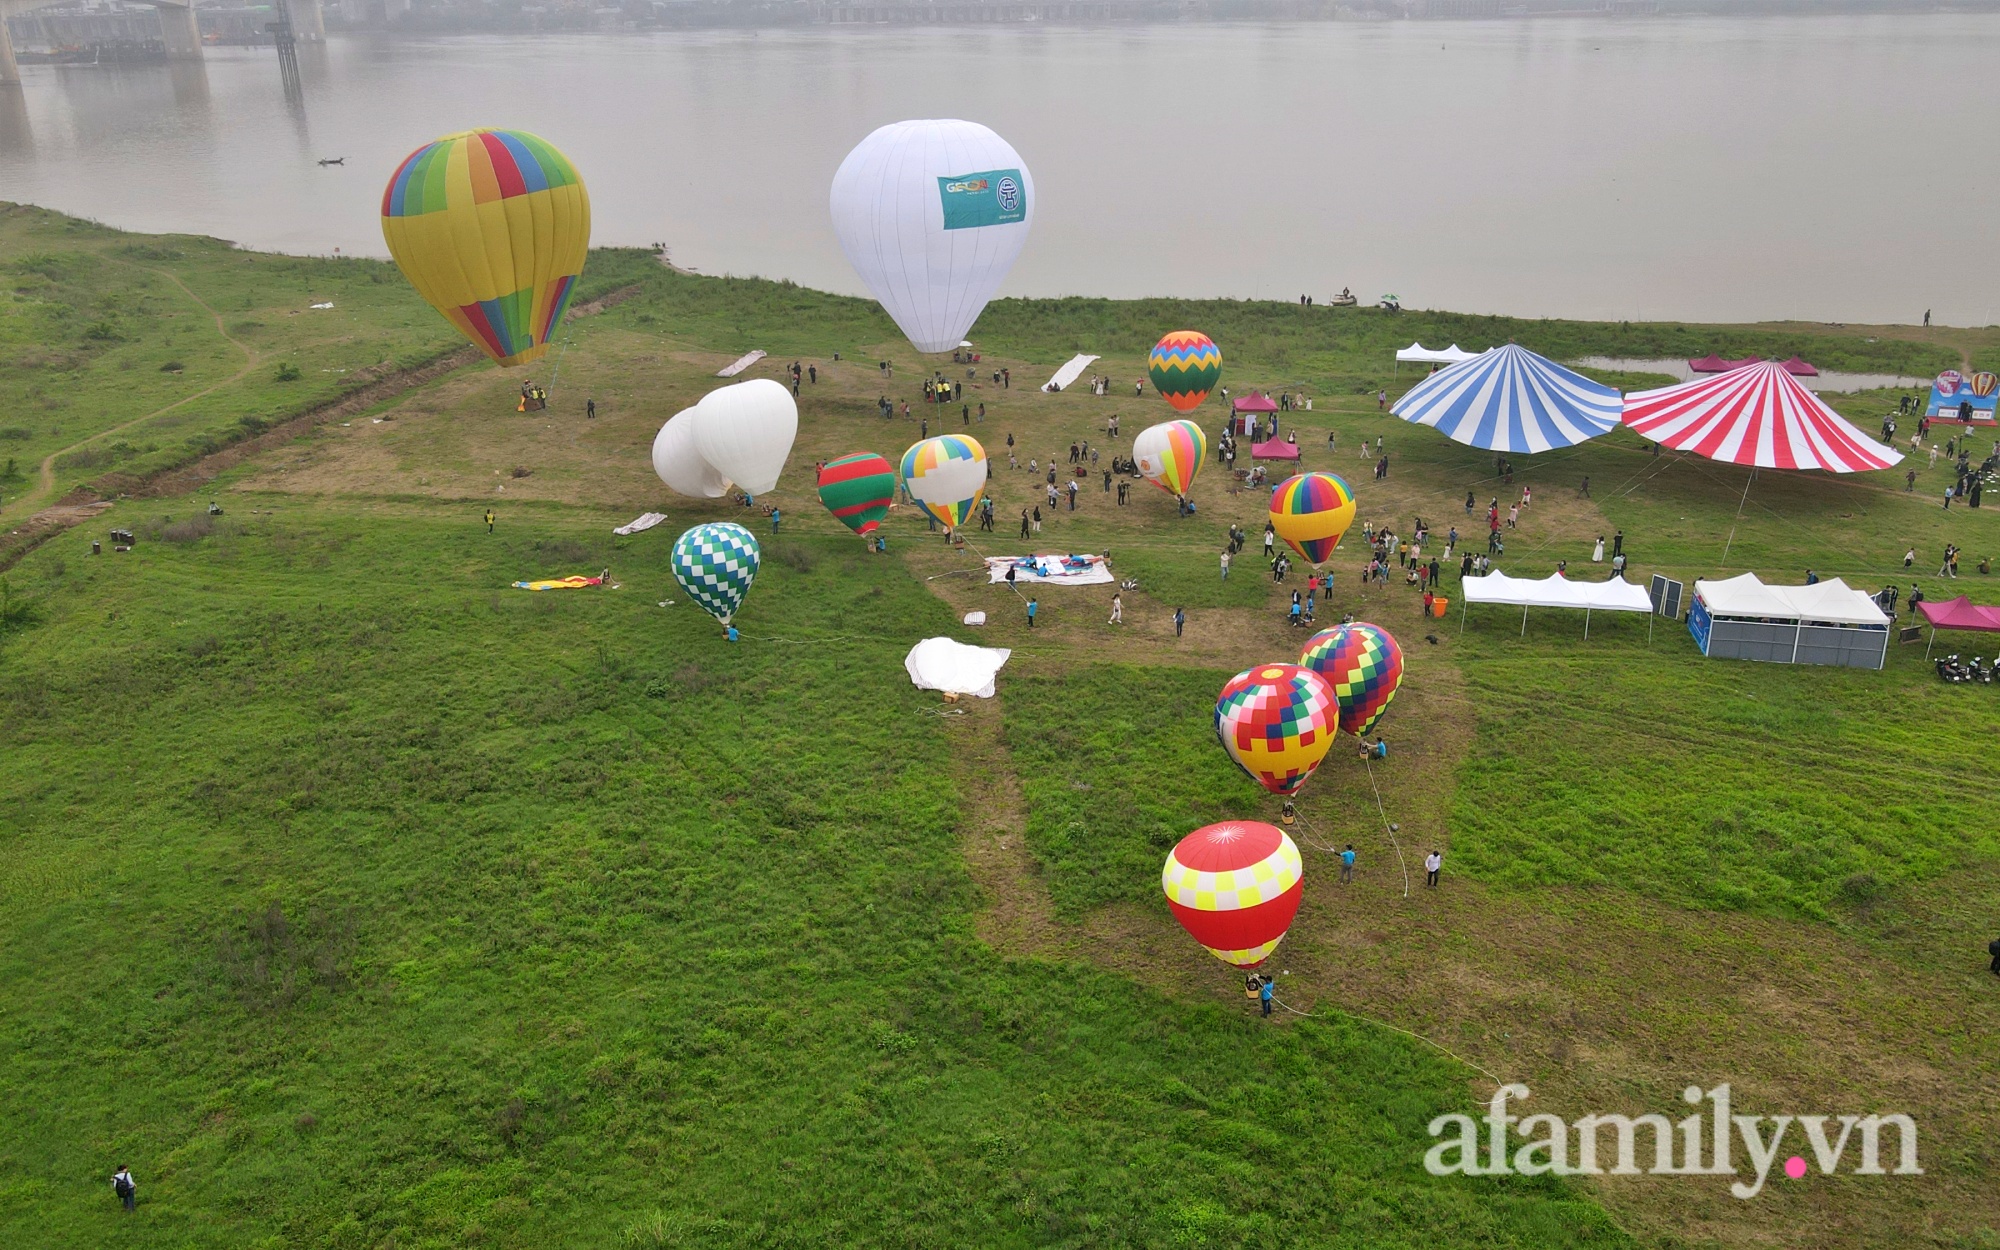 Lần đầu tiên tổ chức Ngày hội khinh khí cầu tại Hà Nội: Nhanh chân đến để trải nghiệm khoảnh khắc hiếm có ngắm thành phố từ trên cao - Ảnh 14.